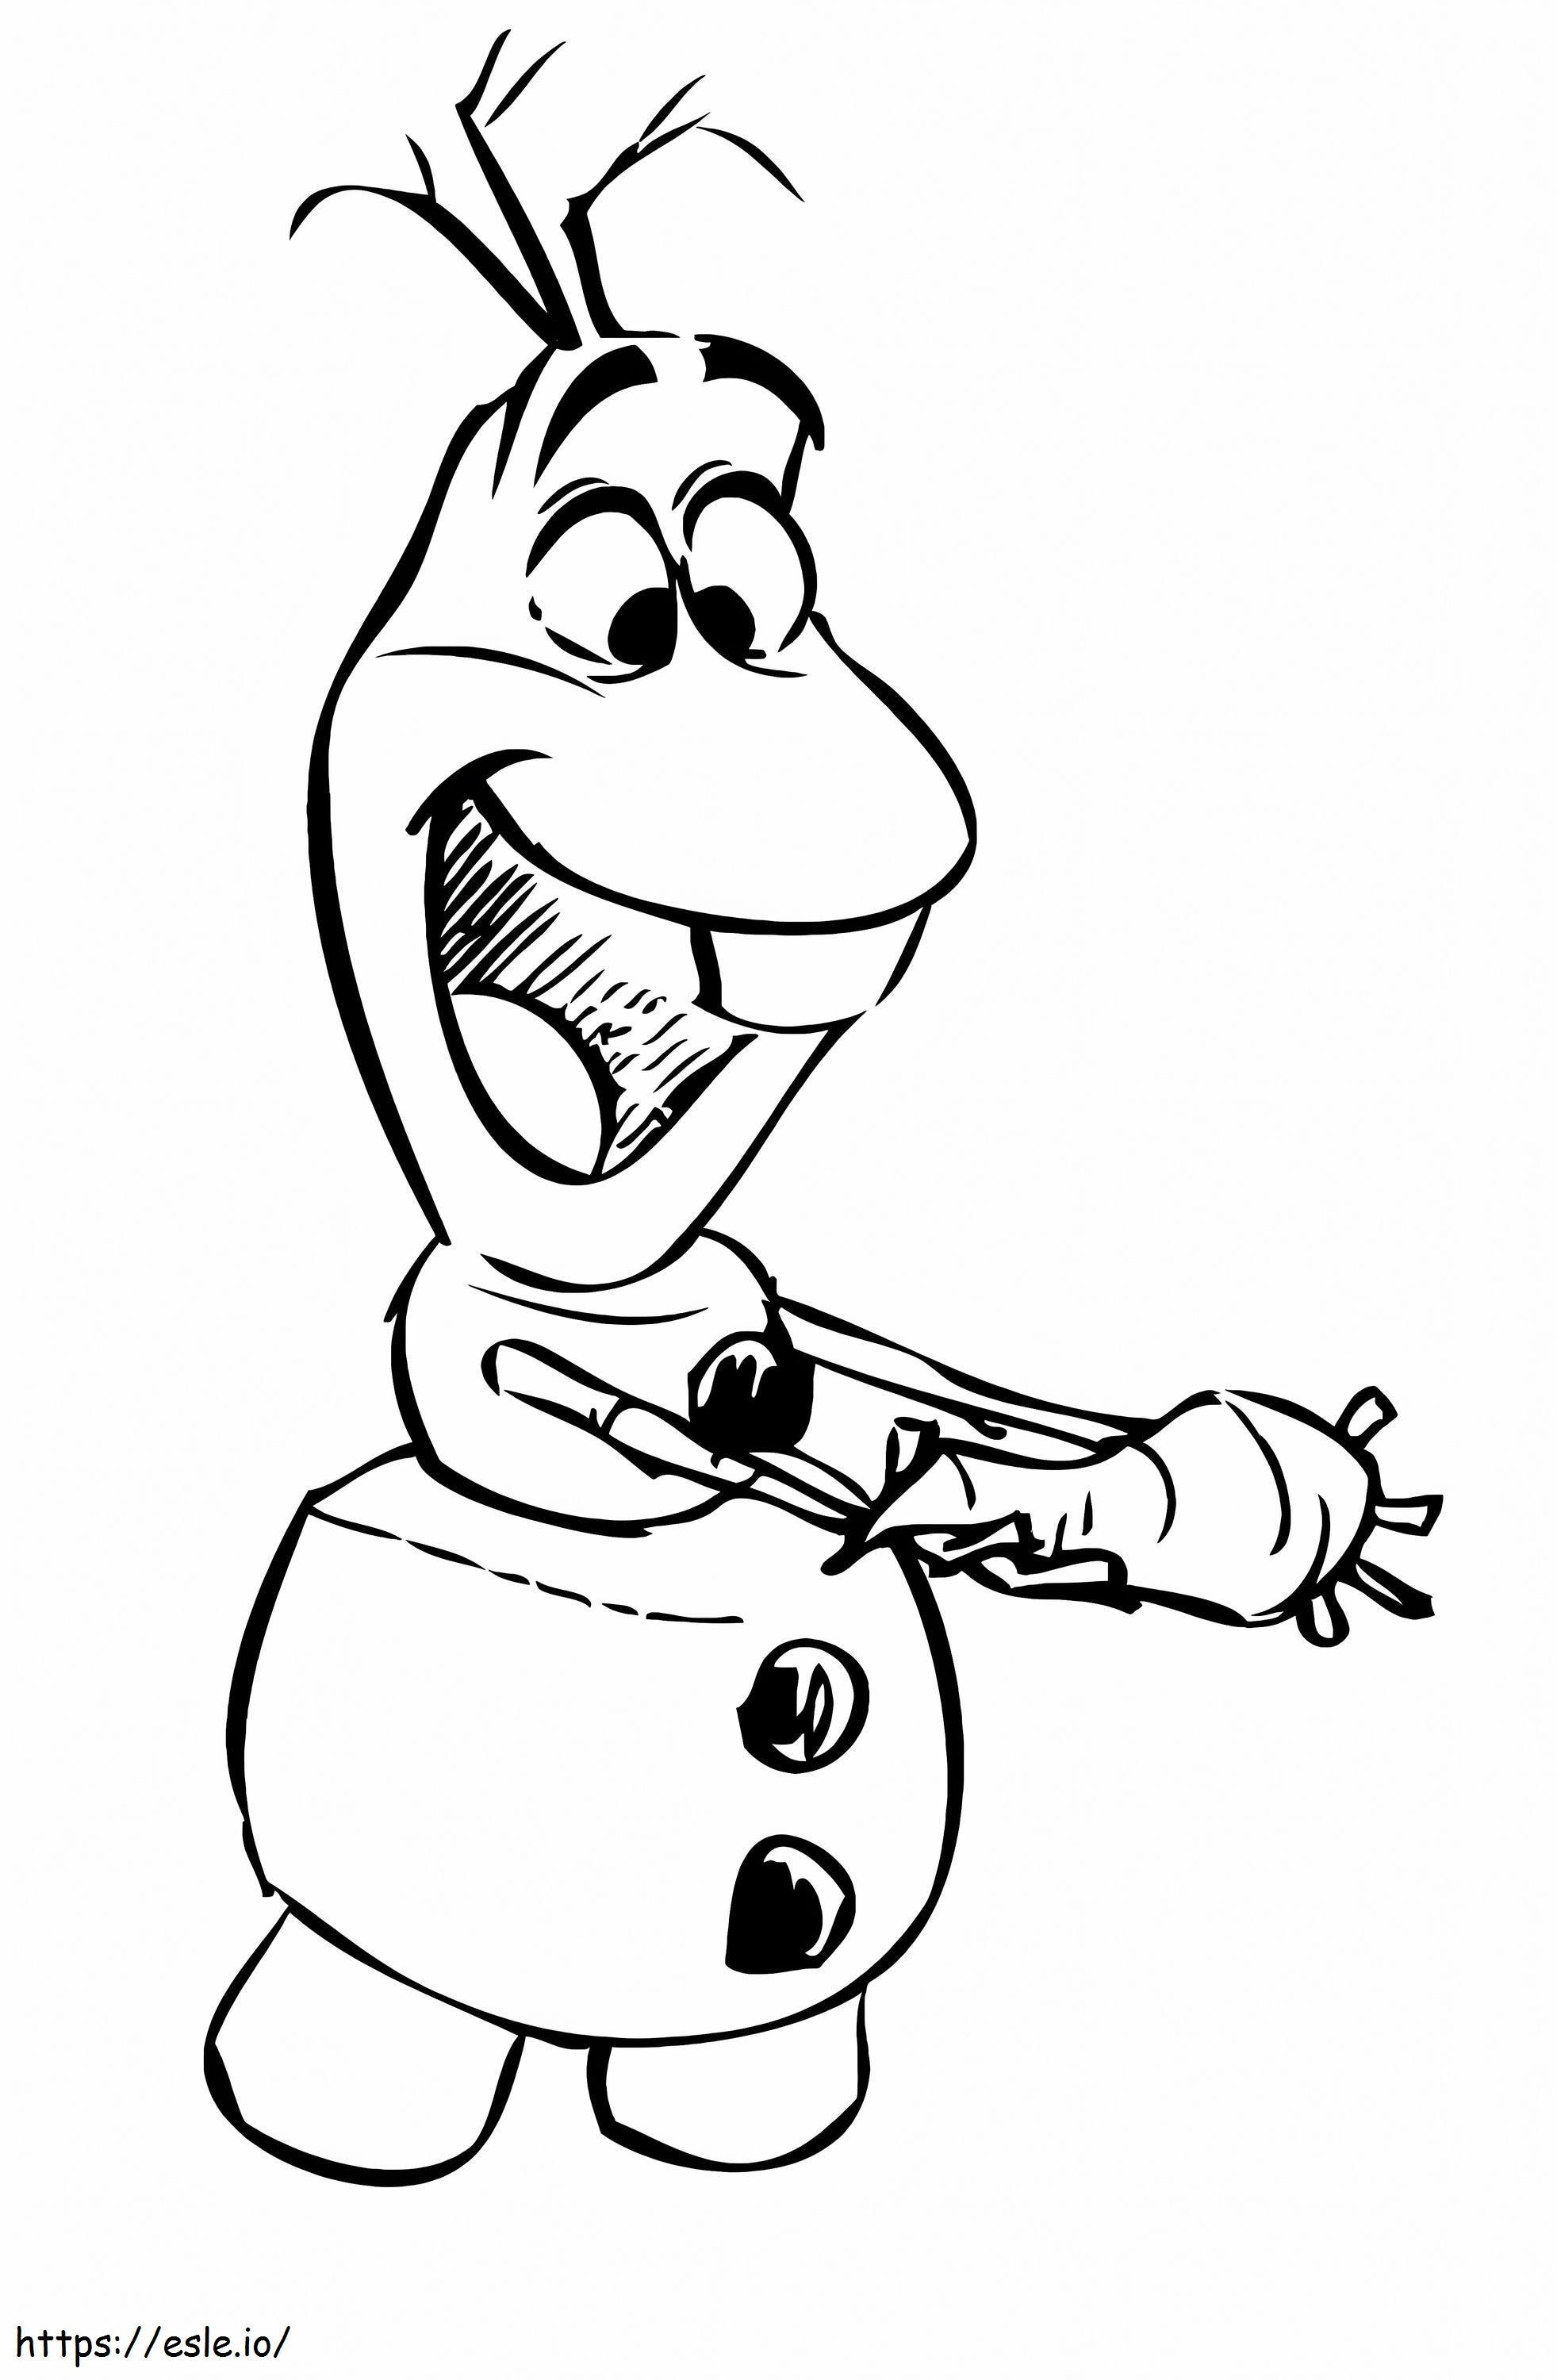 Olaf mit einer Karotte zeichnen ausmalbilder